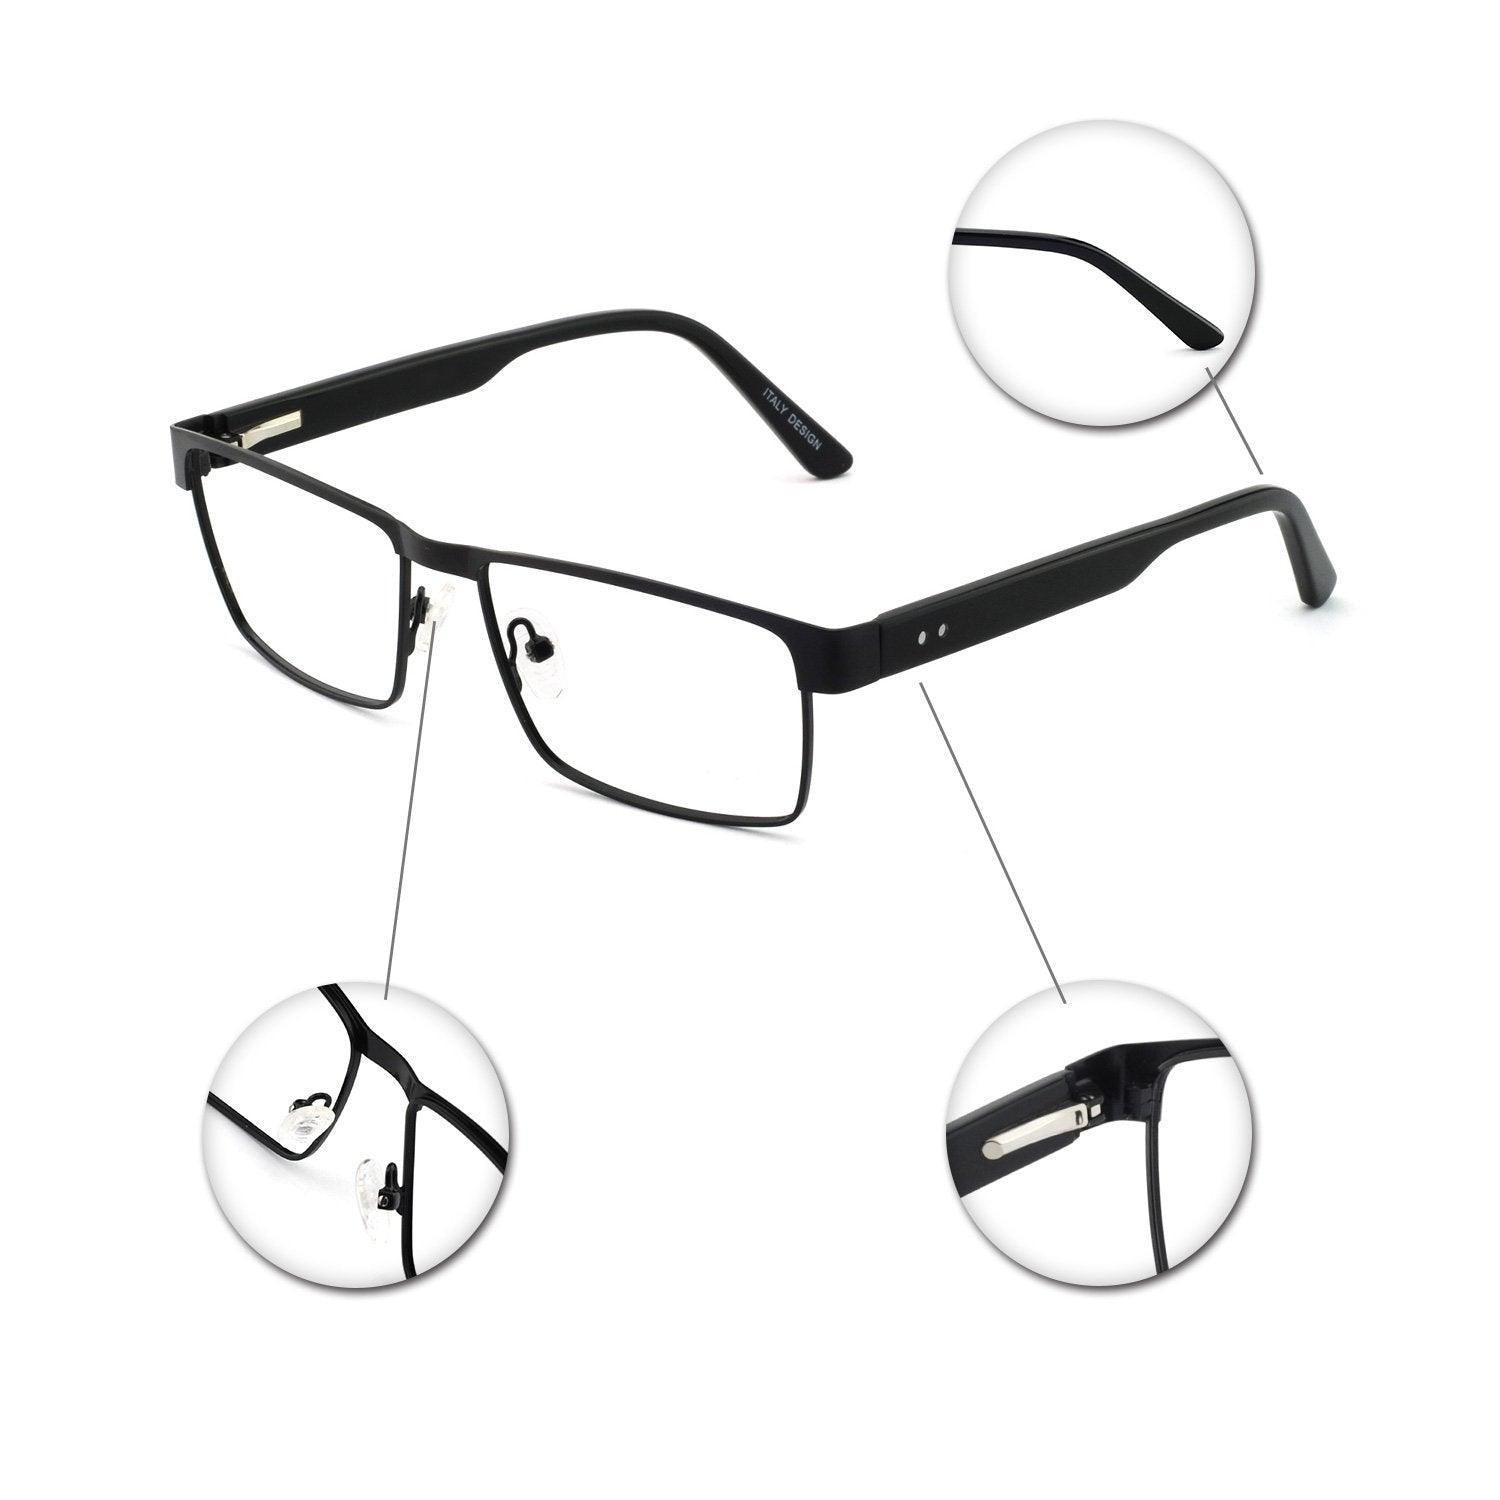 OCCI CHIARI Blue Light Reading Glasses for Men Men's Reading glasses 1.0 1.5 2.0 2.5 3.0 3.5 - Occichiari 